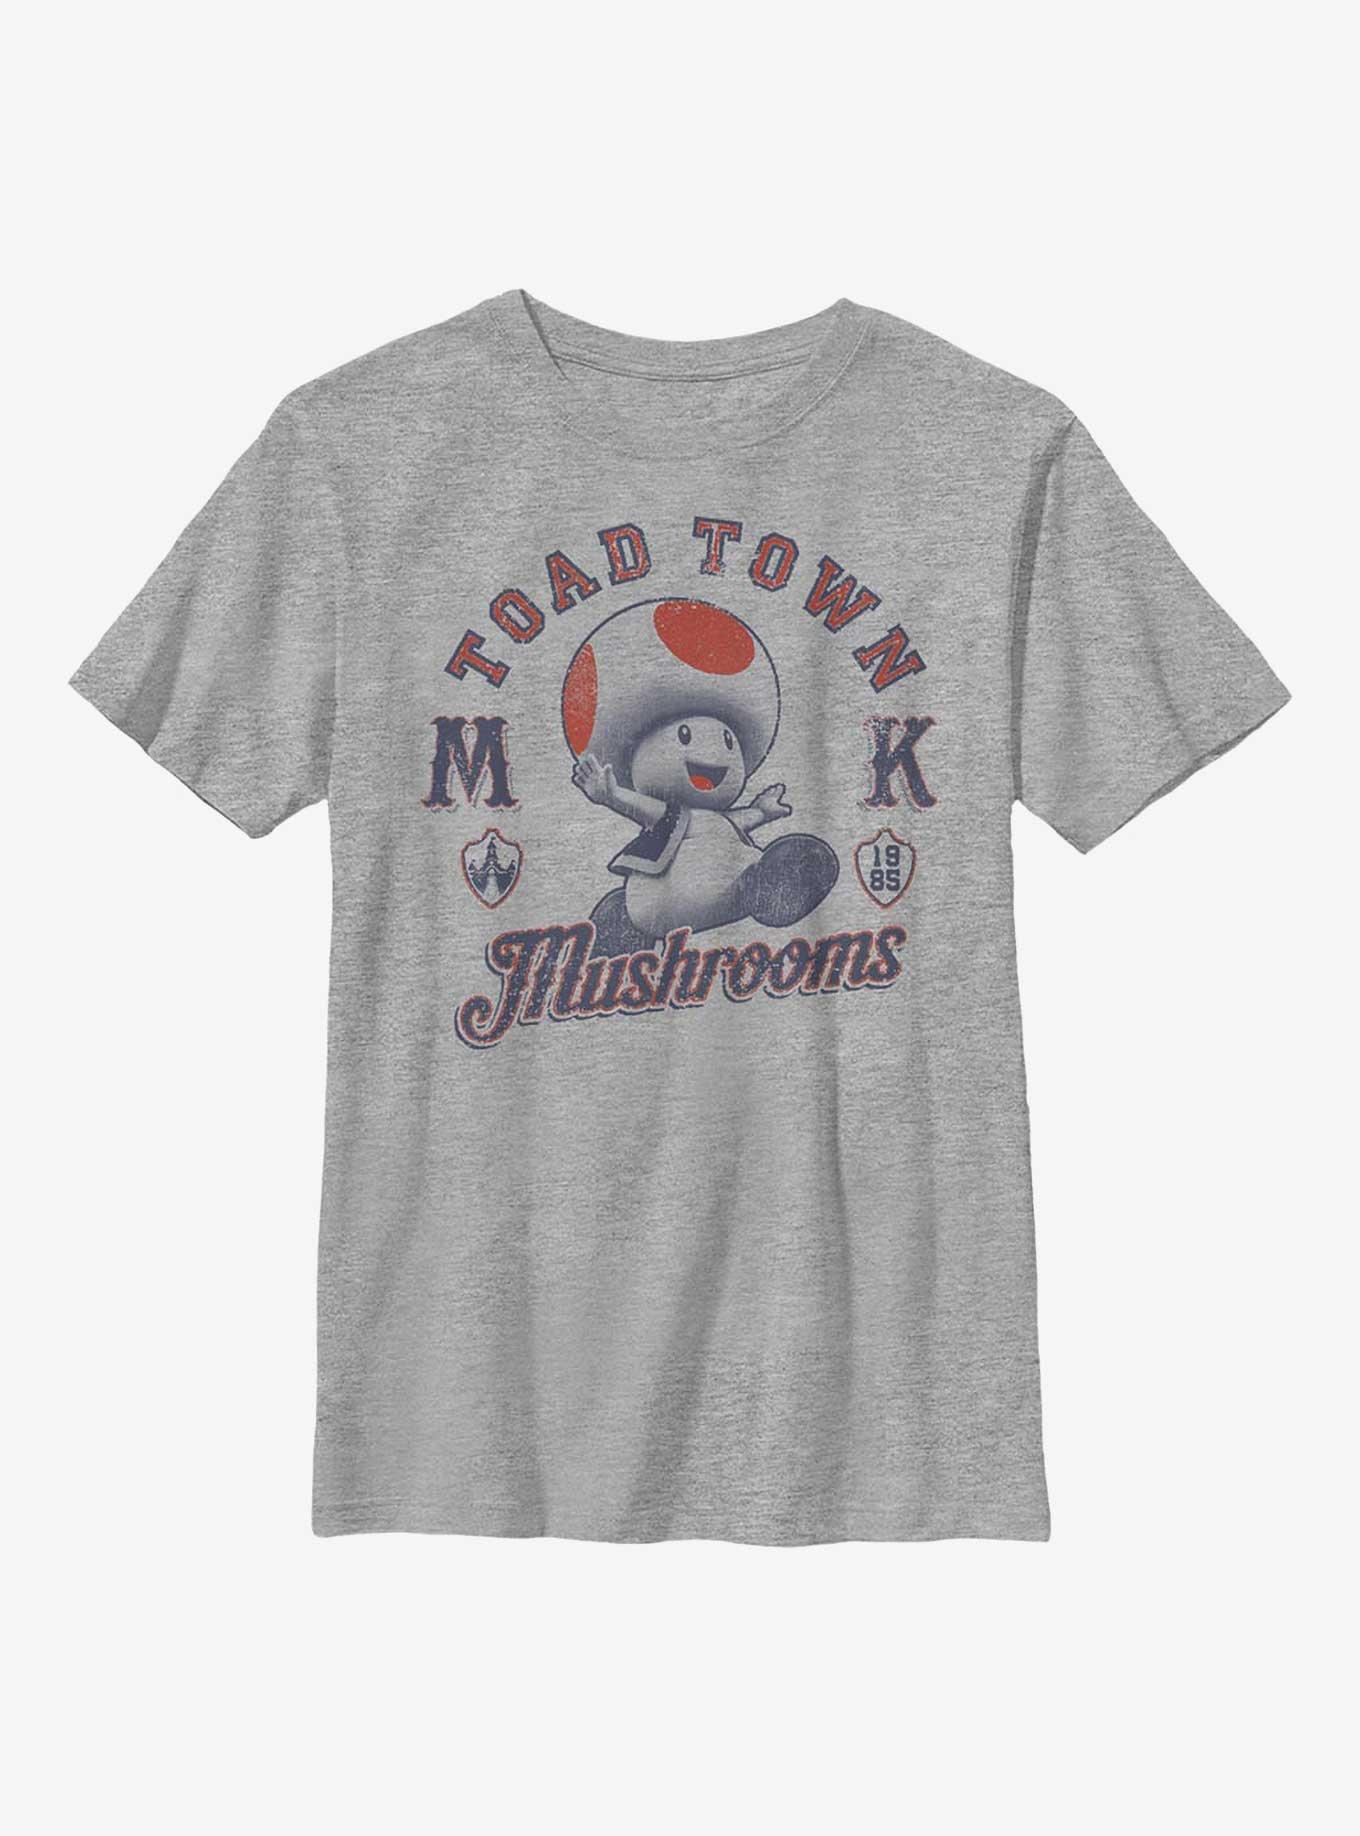 Nintendo Mario Toad Town Mushrooms Youth T-Shirt, , hi-res